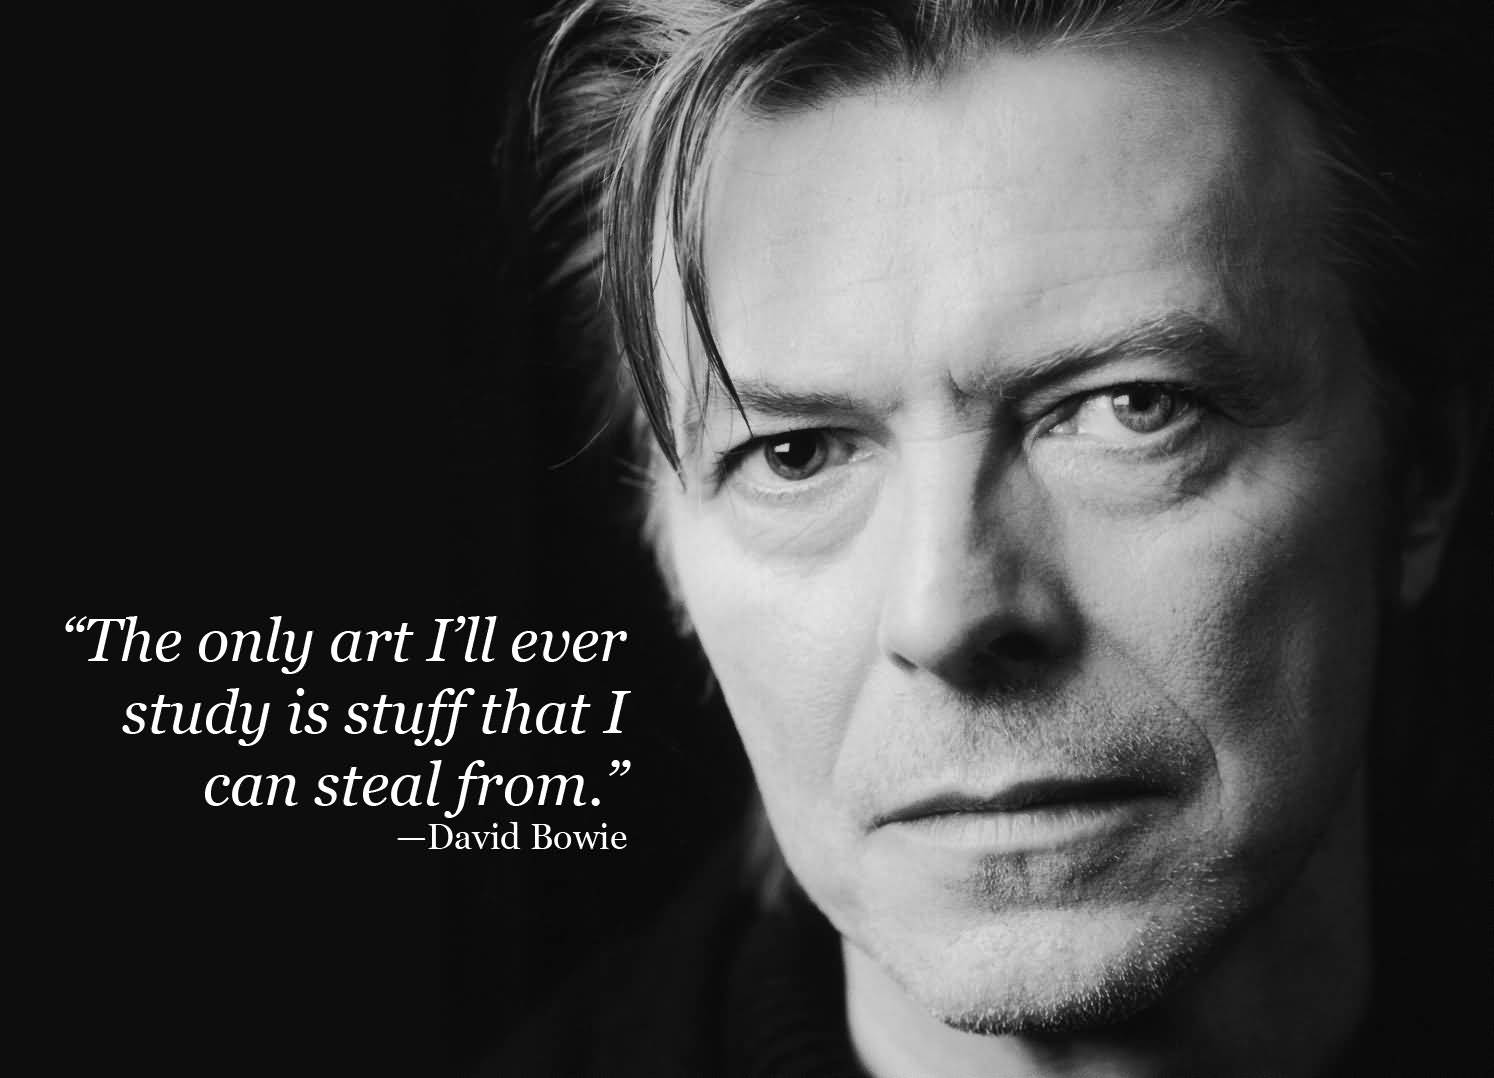 Labyrinth David Bowie Quotes Meme Image 17